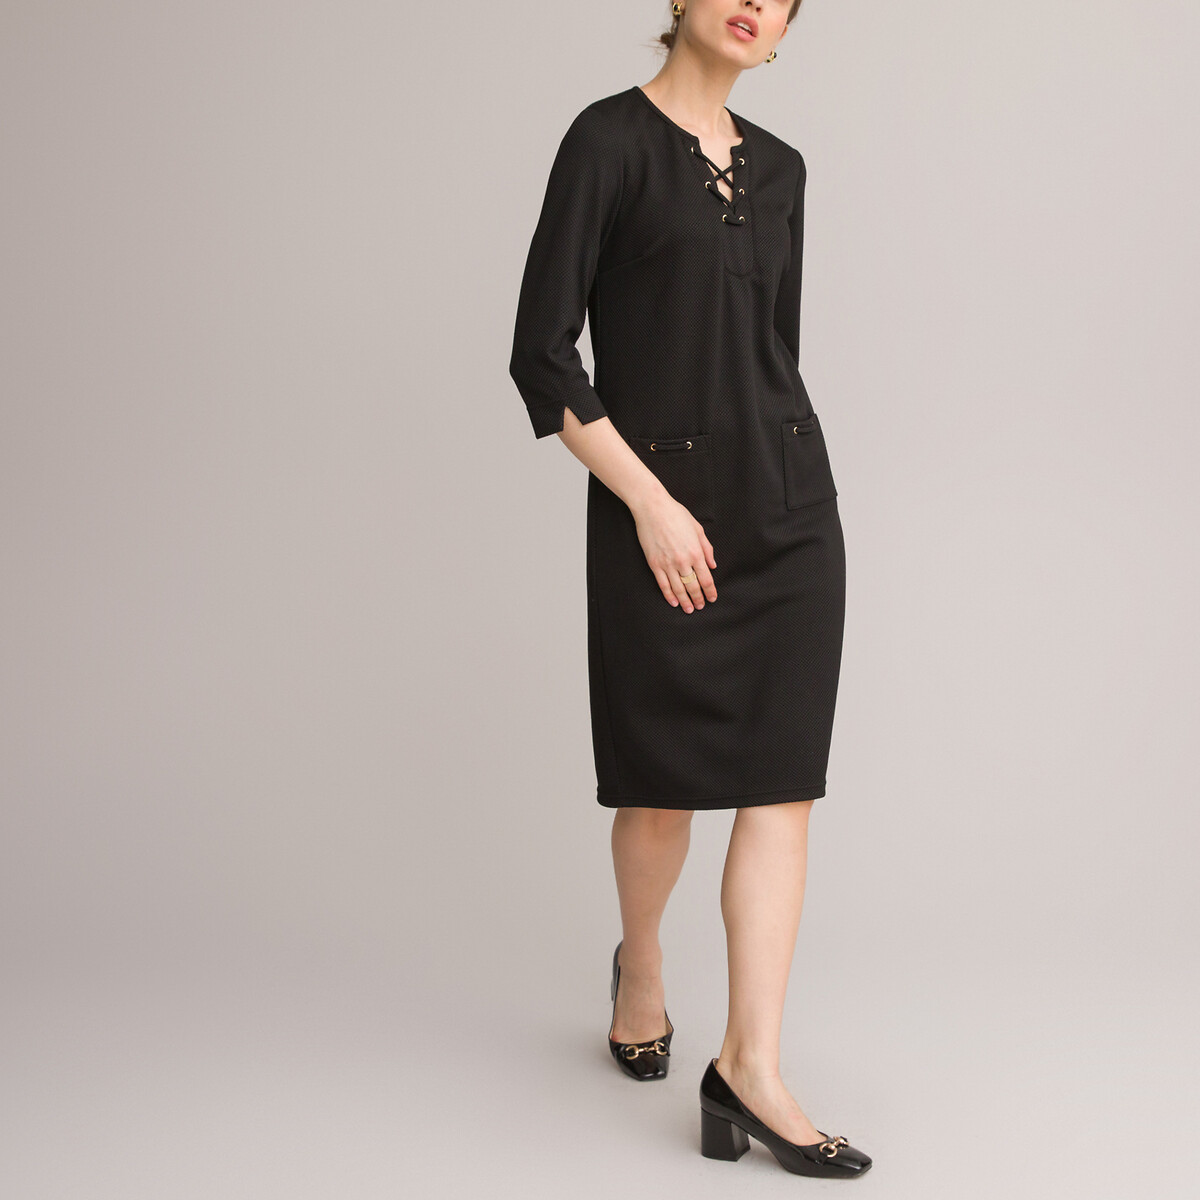 Платье ANNE WEYBURN Платье Прямое средней длины рукава 34 56 черный, размер 56 - фото 2